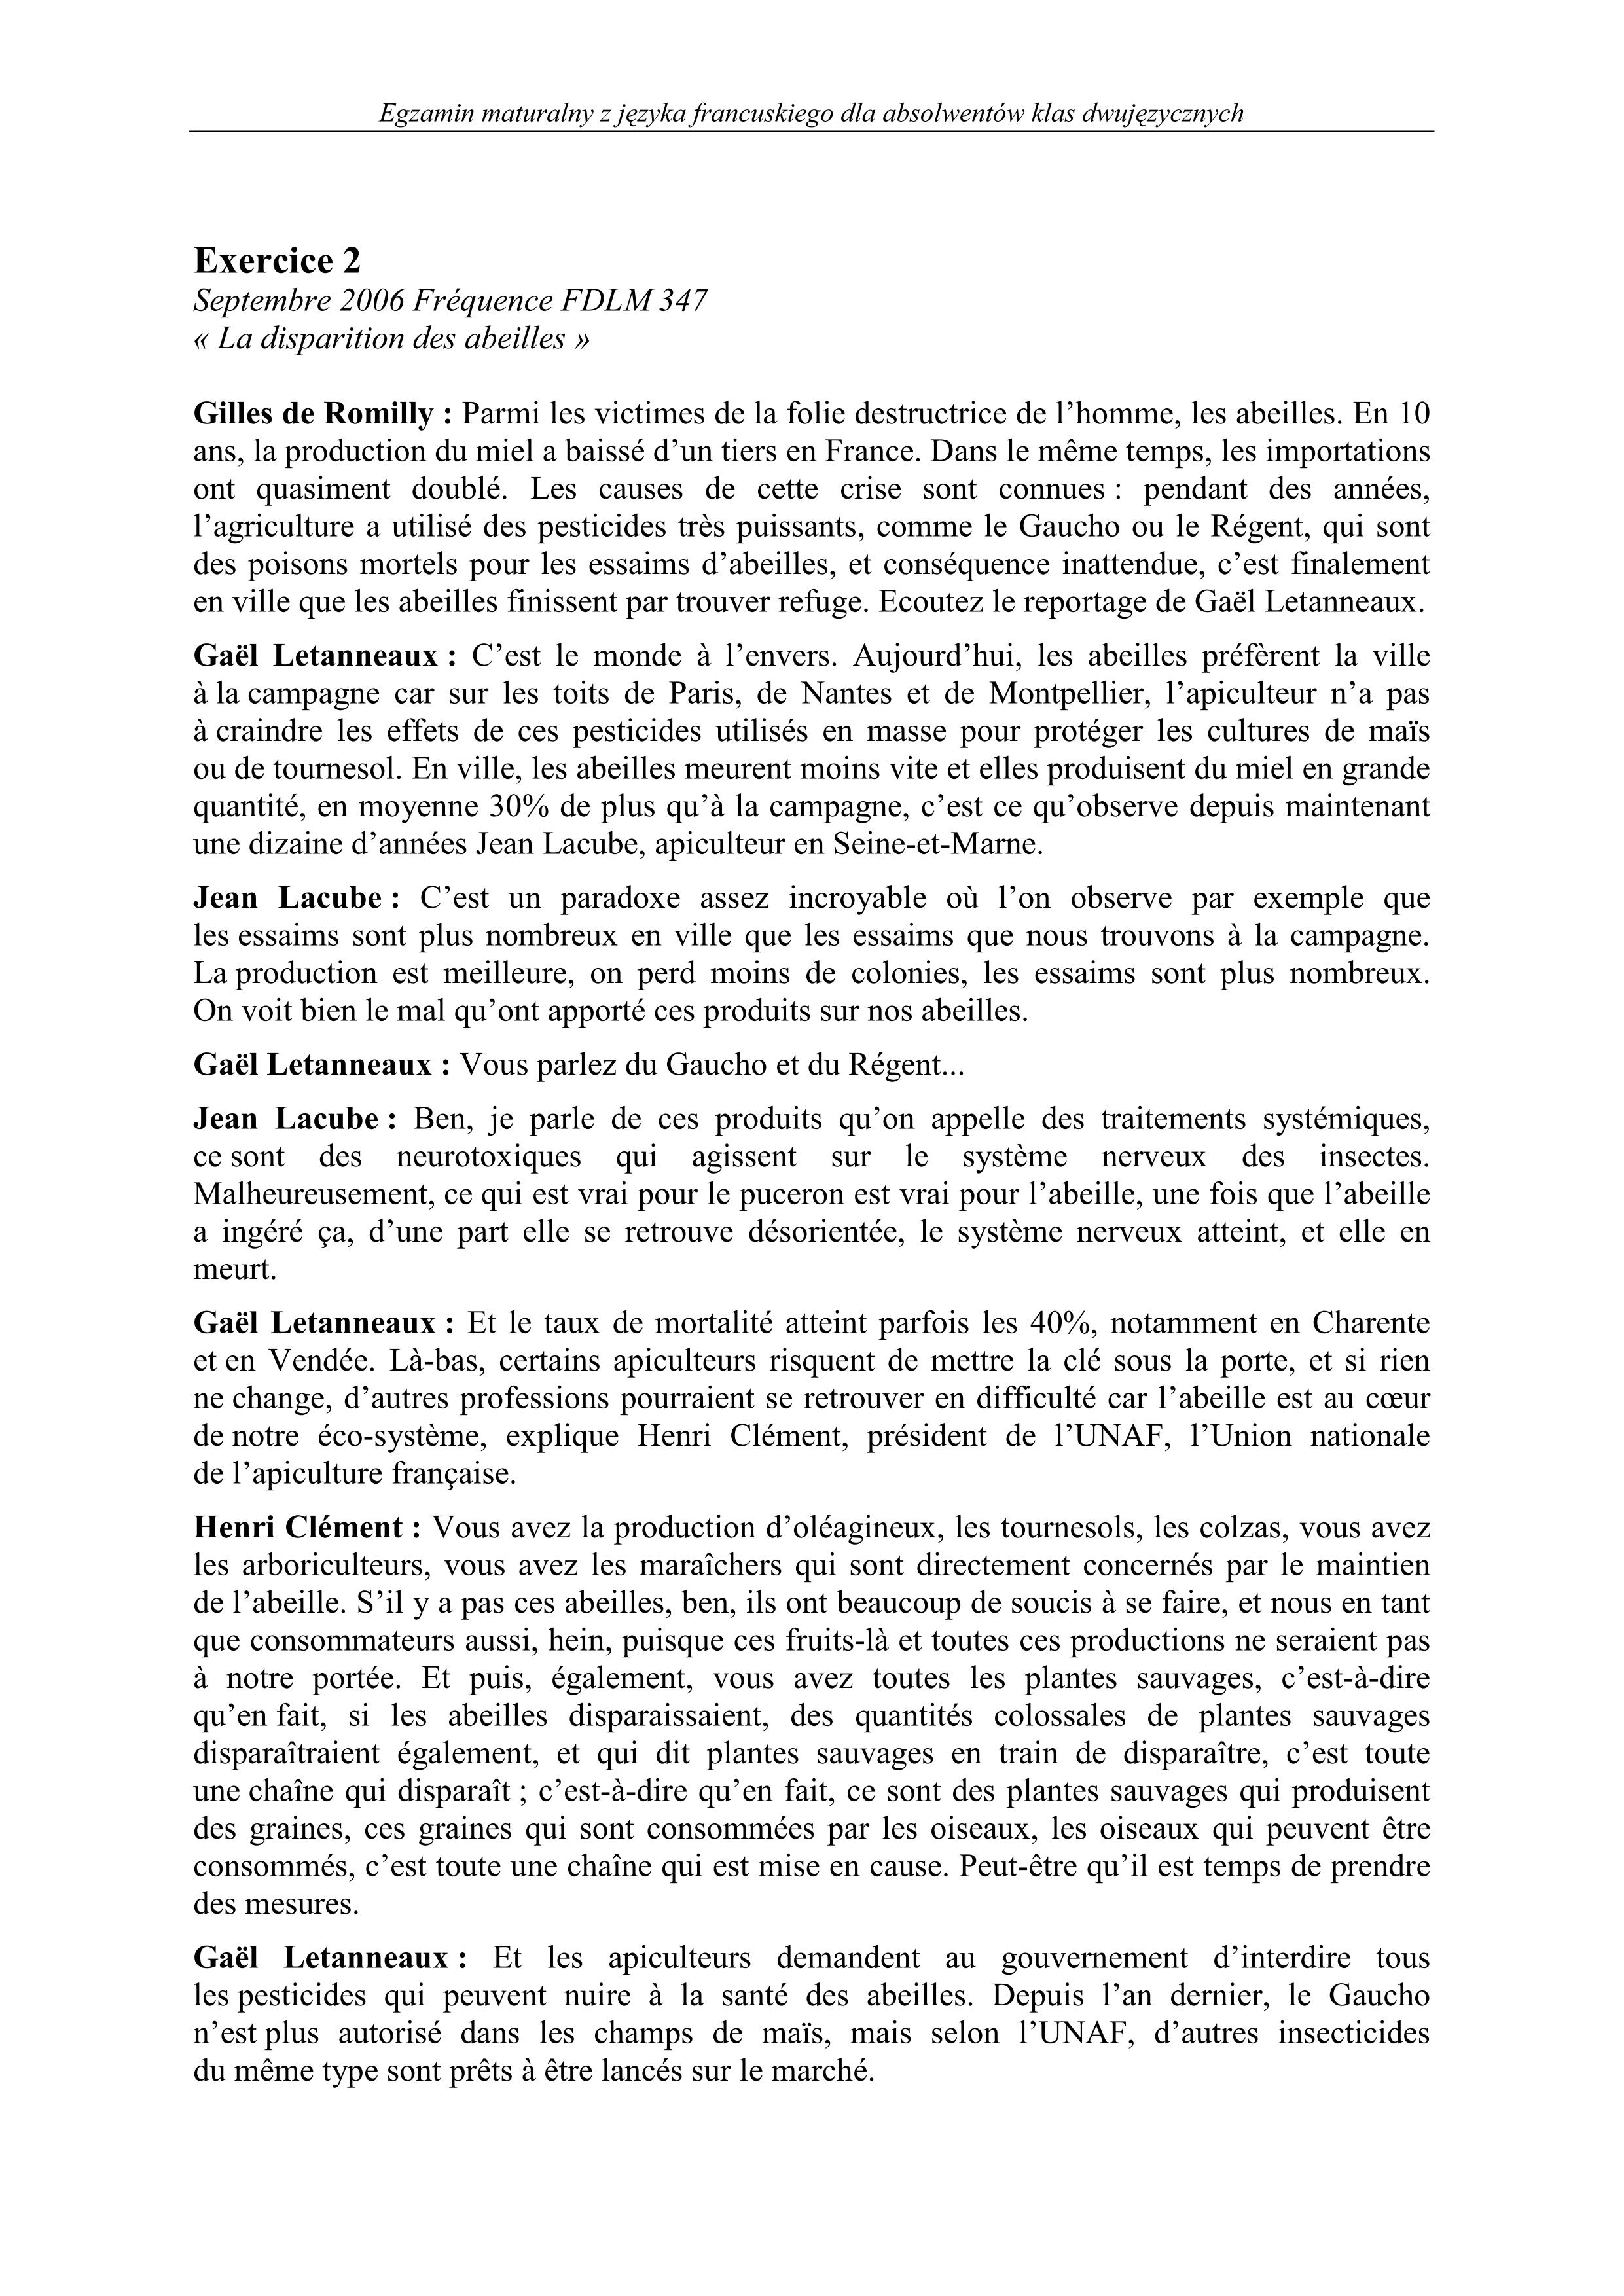 transkrypcja-jezyk-francuski-dla-klas-dwujezycznych-matura-2011 - 2